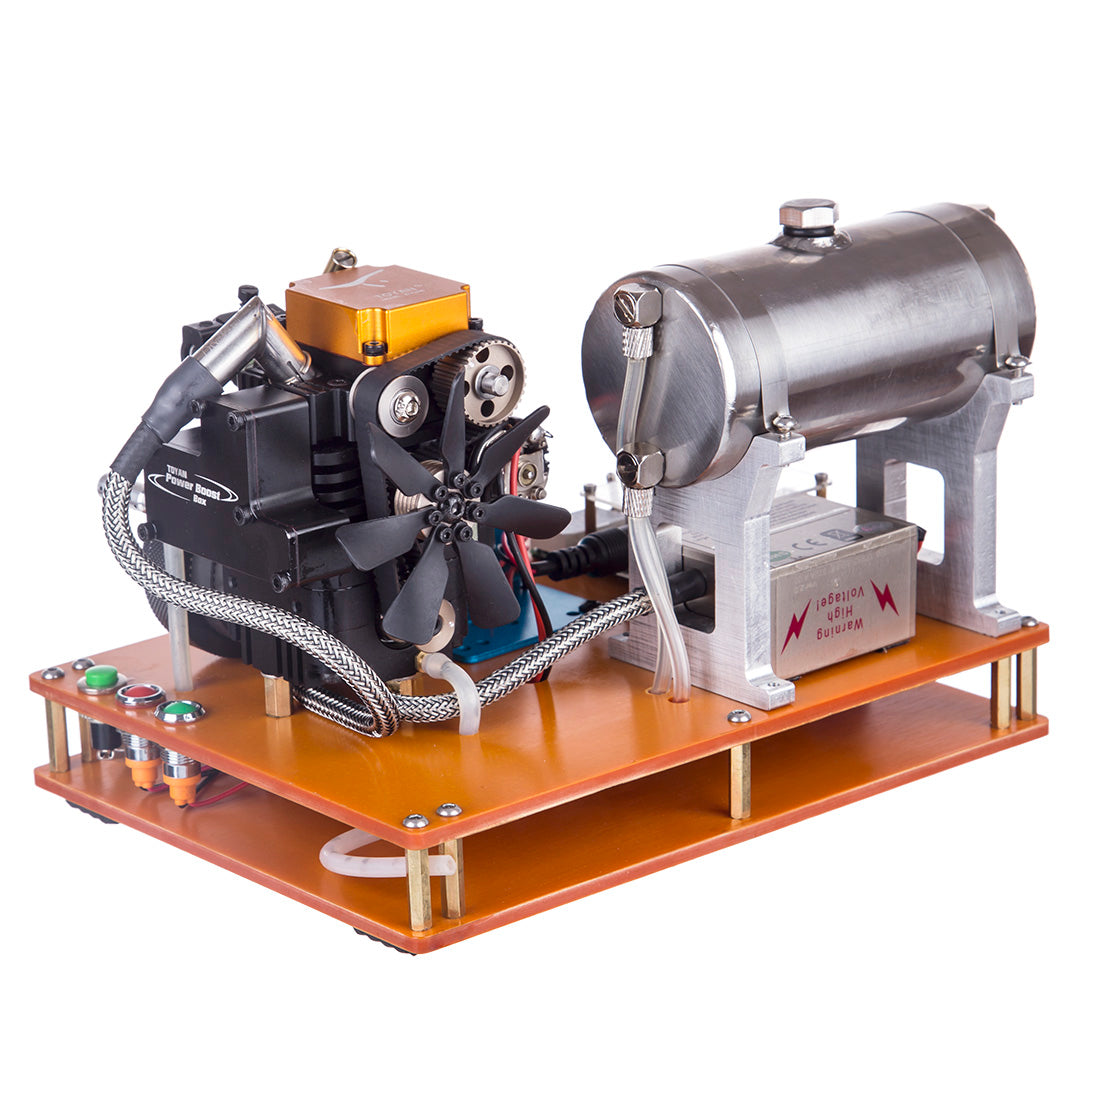 Toyan FS-S100 4 Stroke Methanol Engine 12V DIY Electric Generator– EngineDIY